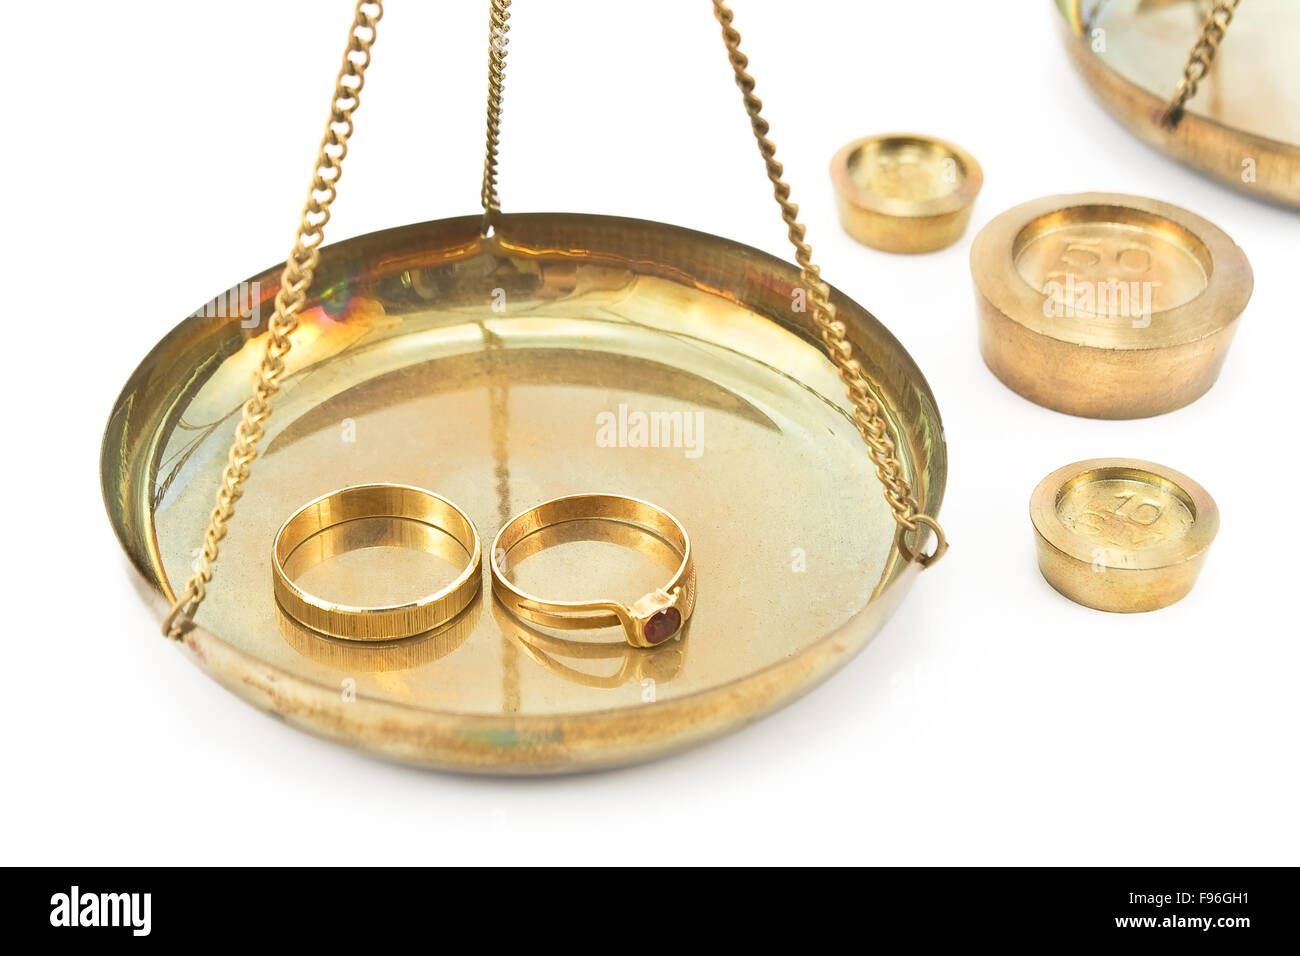 Balanza Báscula con anillos de boda de oro aislado en blanco Foto de stock